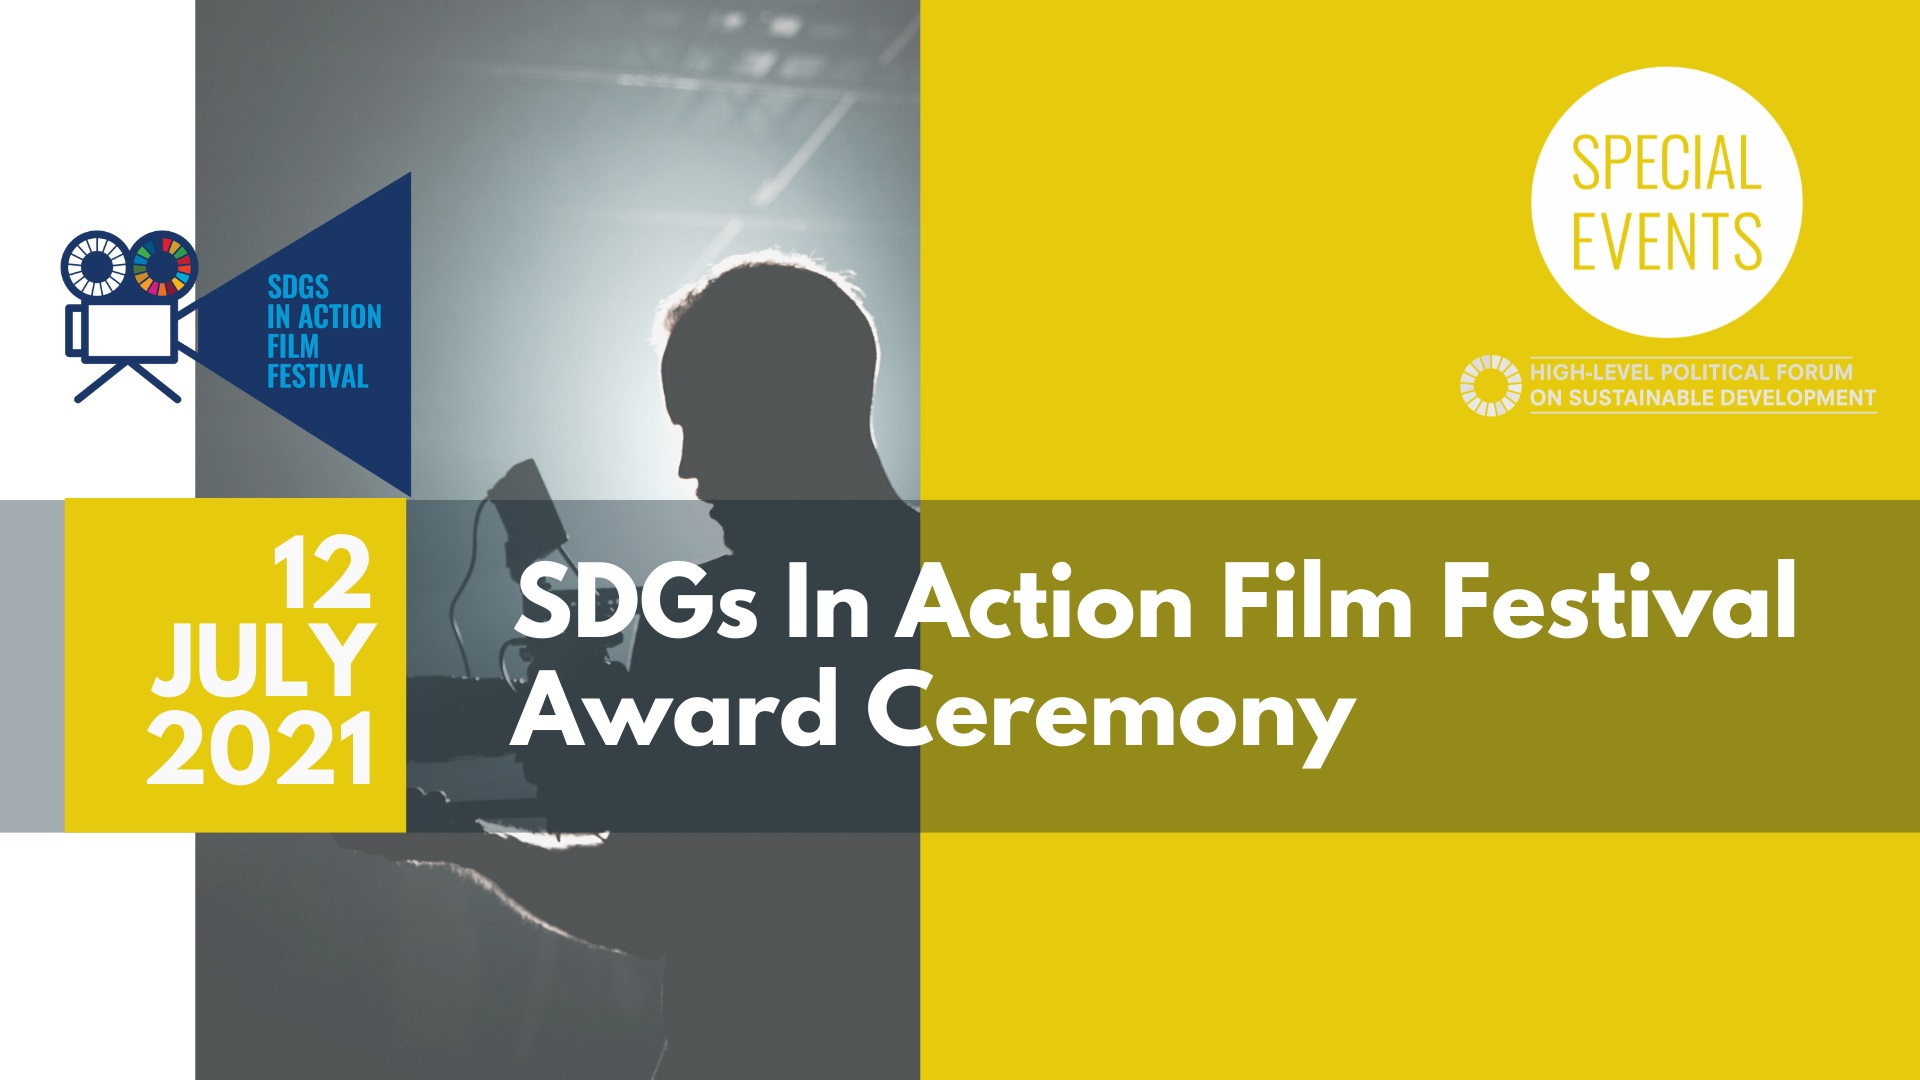 2021 SDGs in Action Film Festival